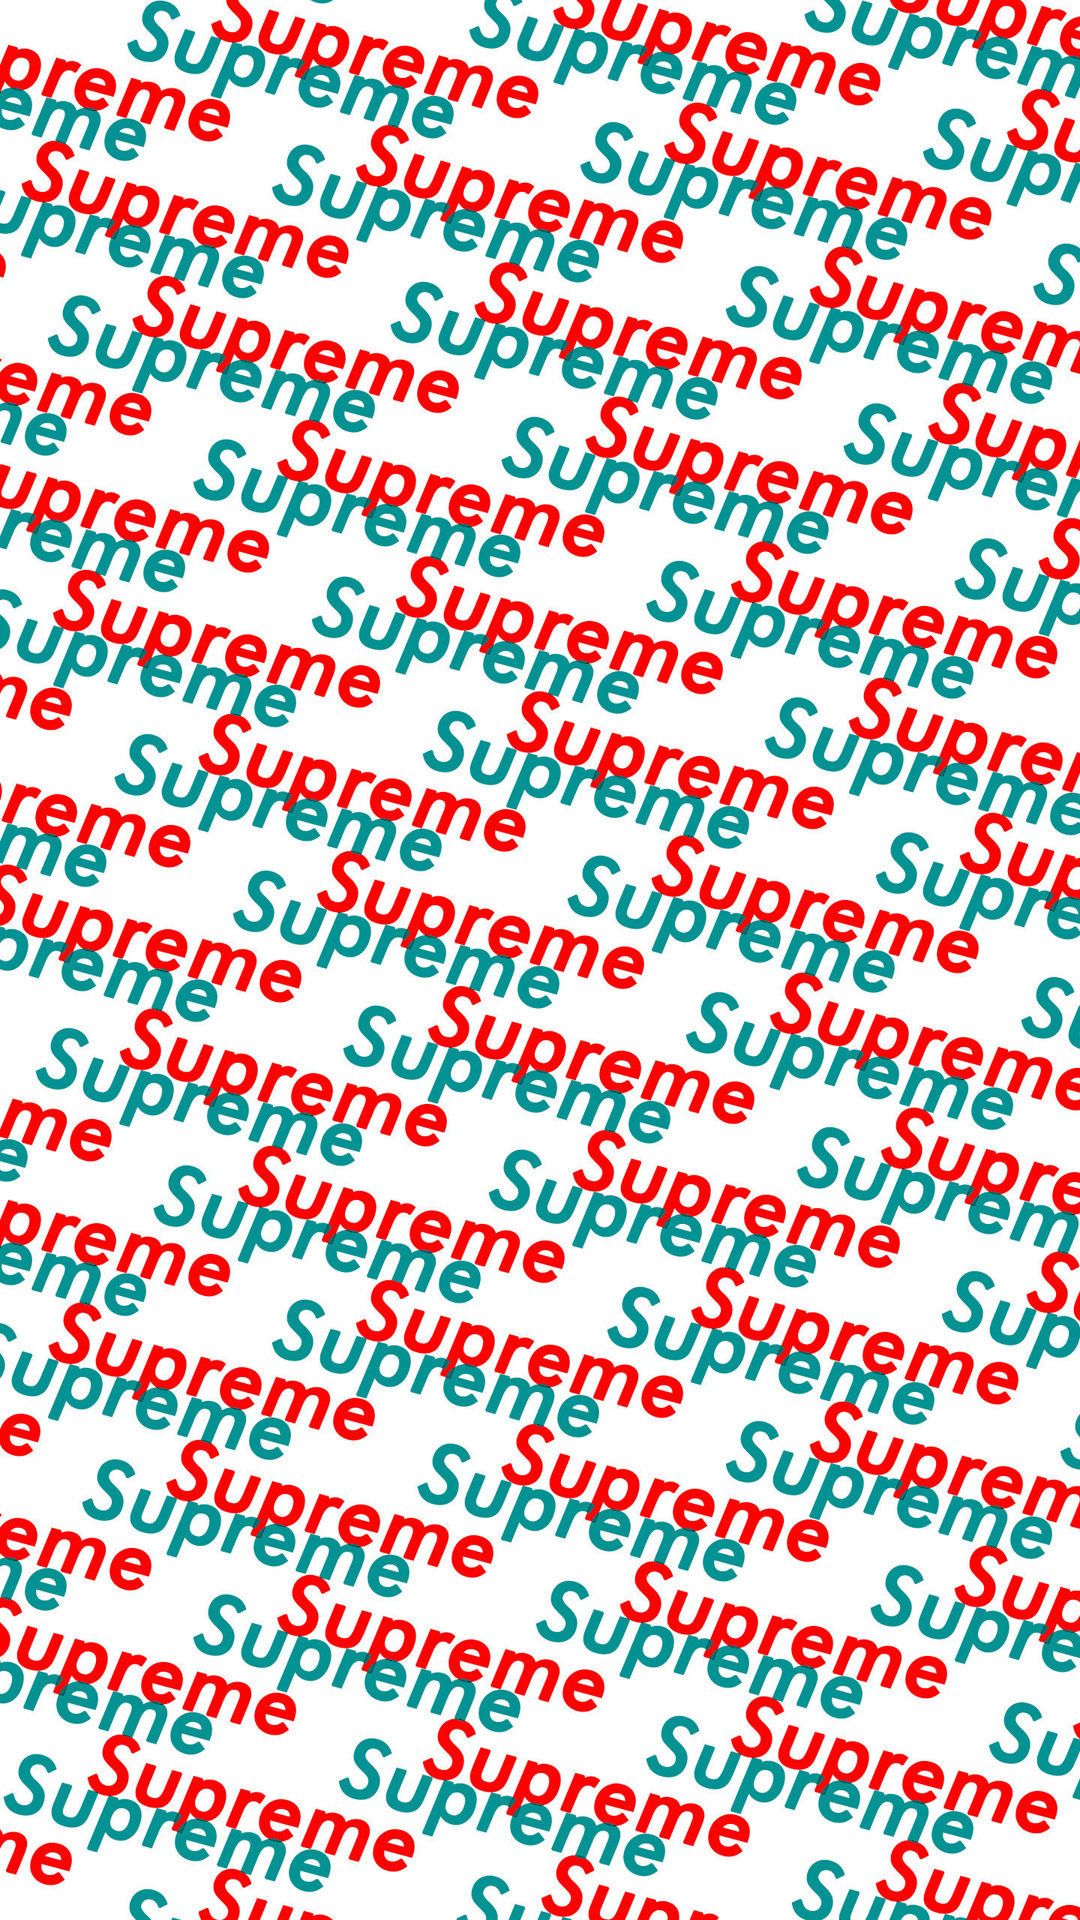 Más de 83 fondos de pantalla de Supreme